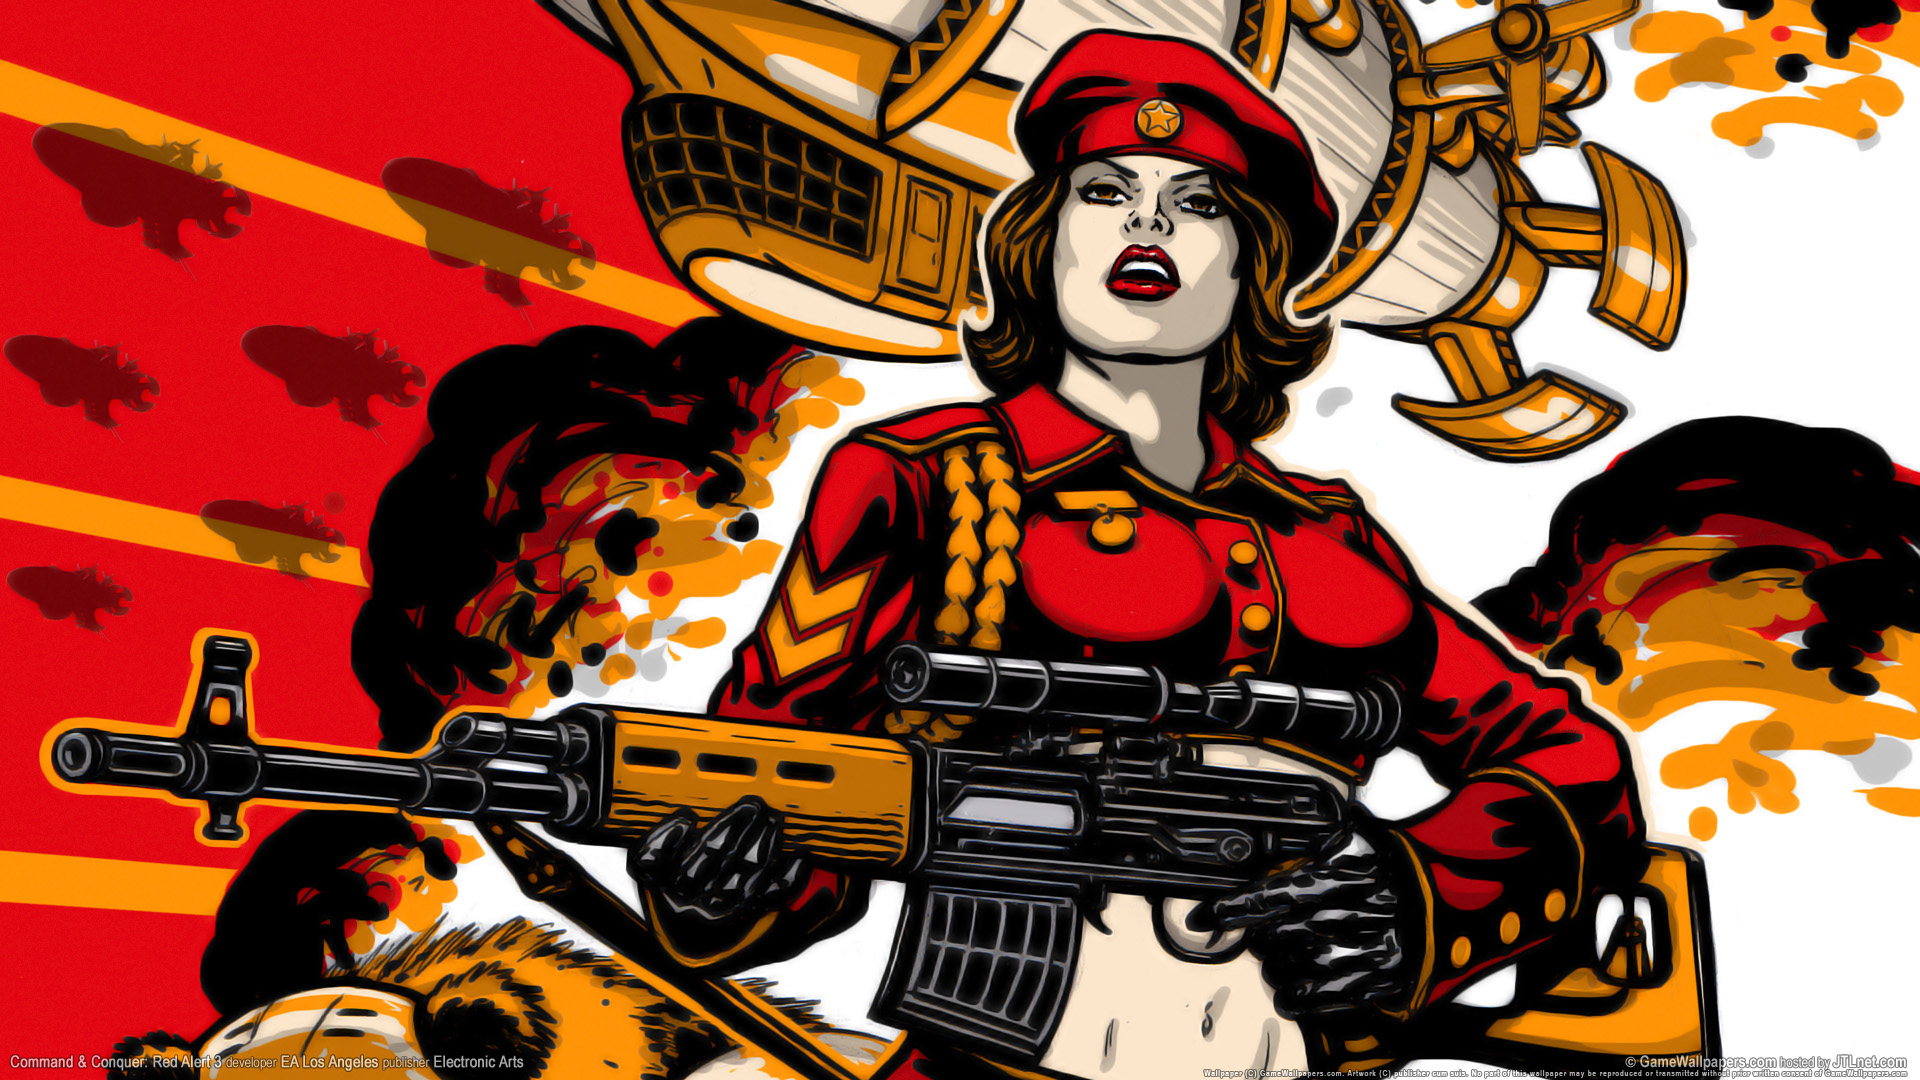 red alert 3 wallpaper,gun,cartoon,illustration,fictional character,art